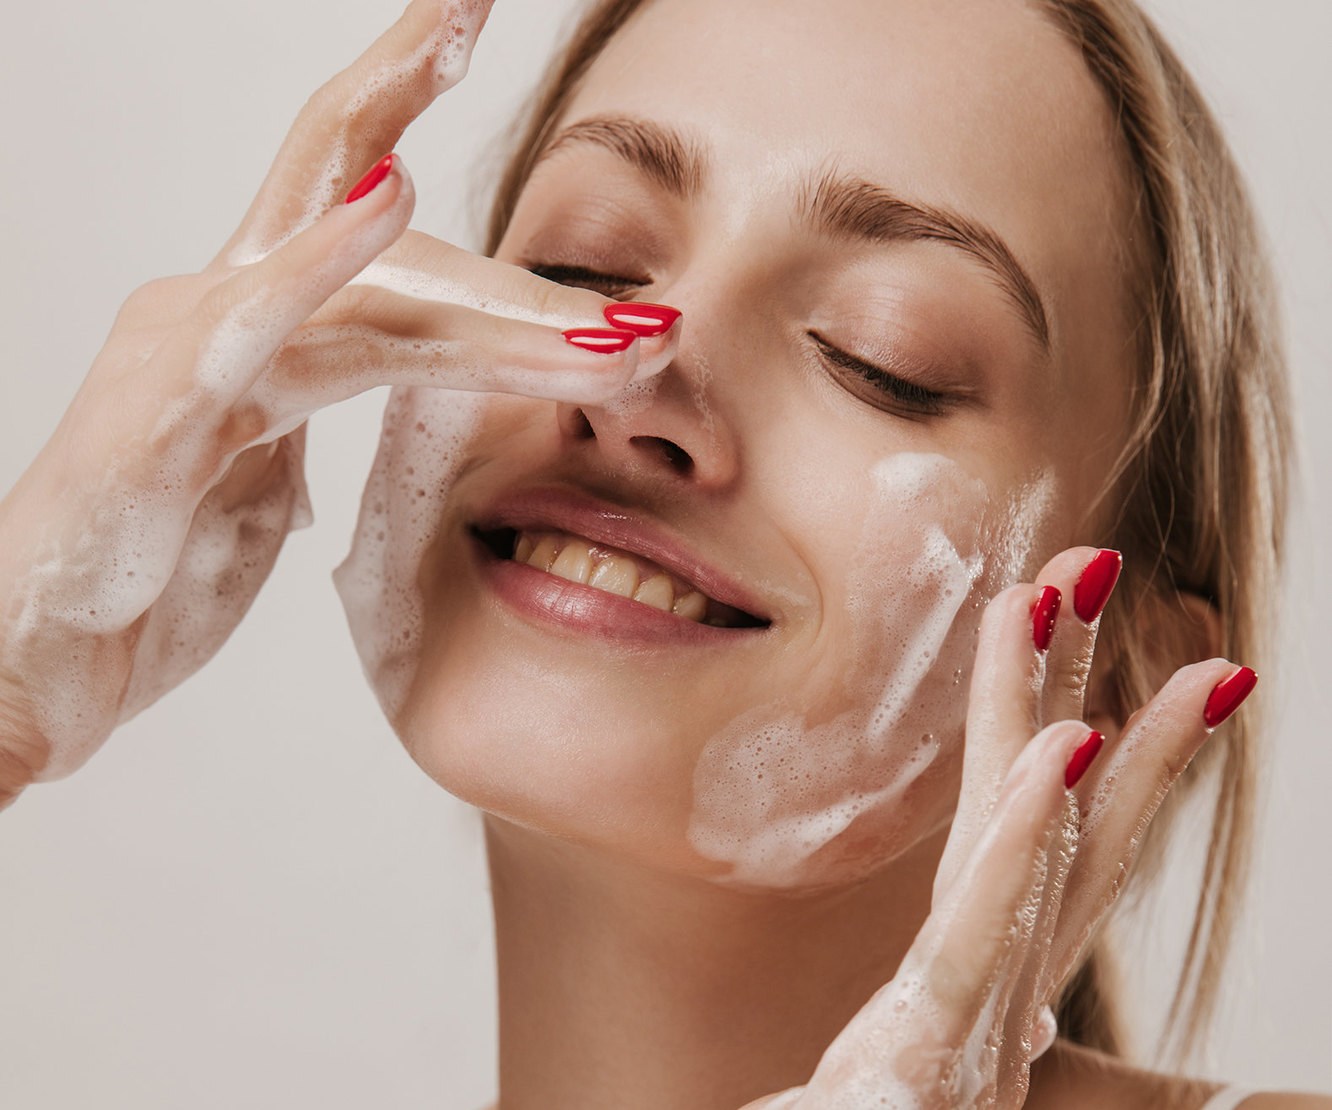 Неровная кожа на лице: выравнивание рельефа кожи у косметолога и дома